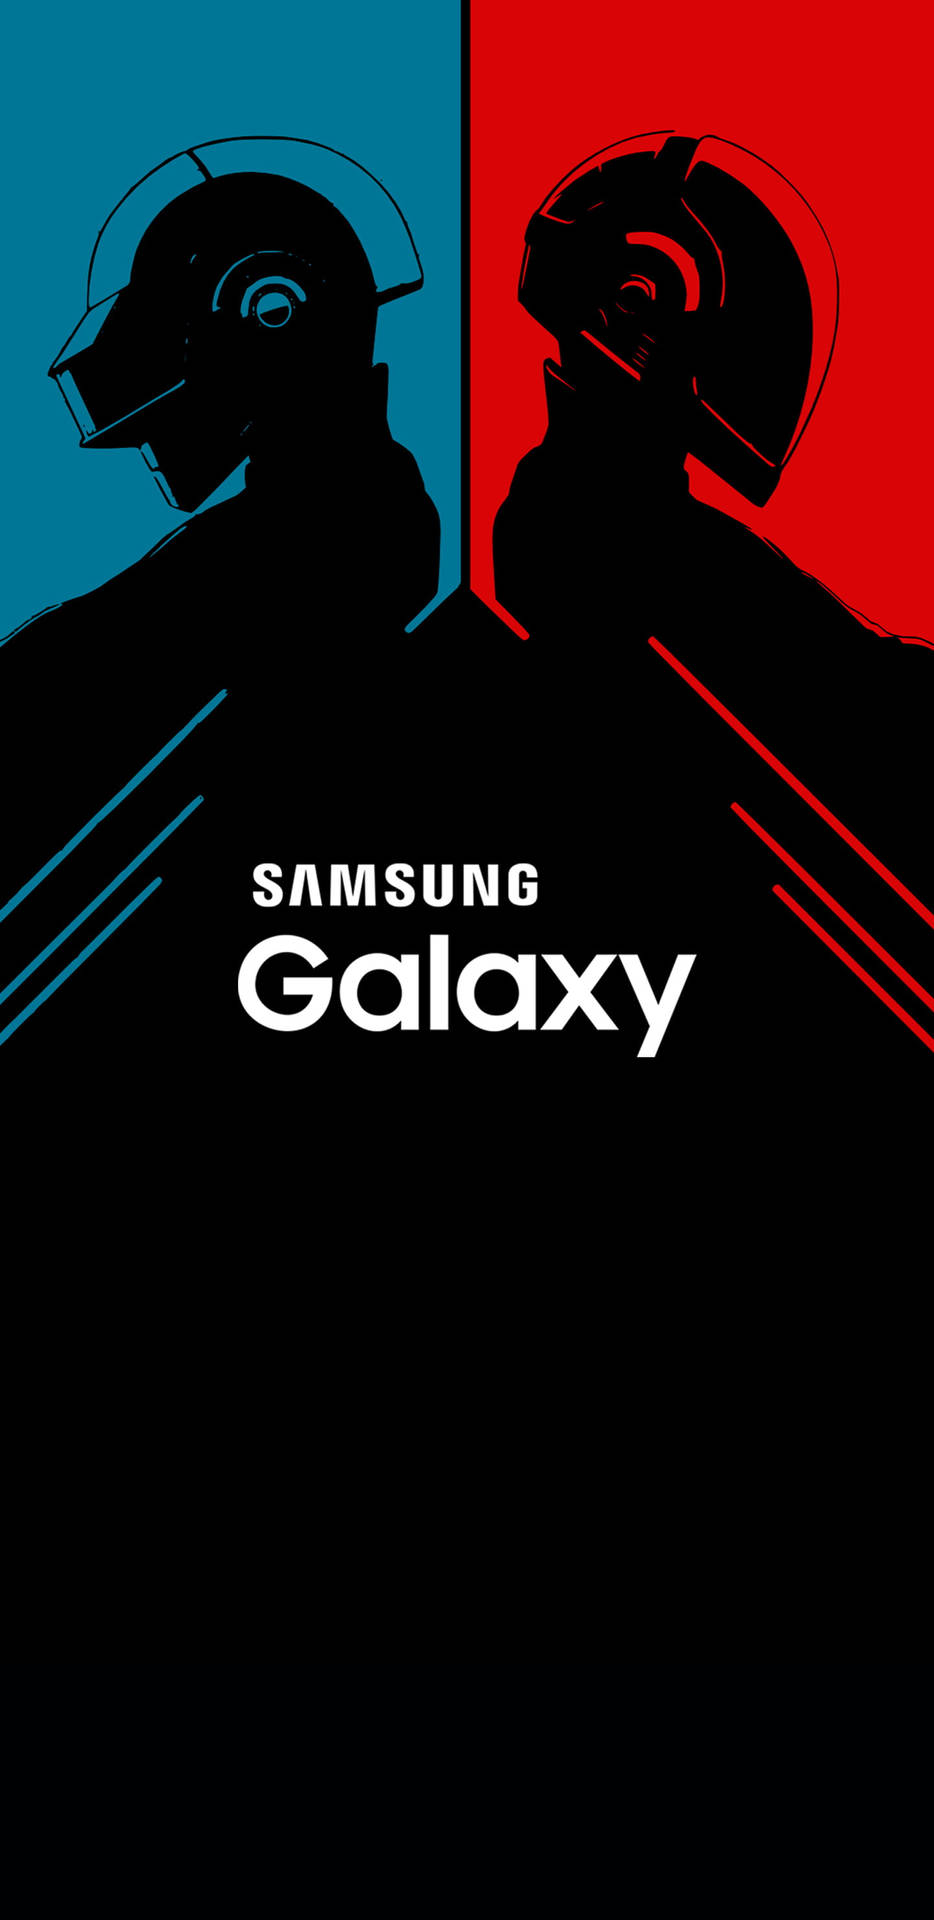 Samsung Galaxy Retro Daft Punk